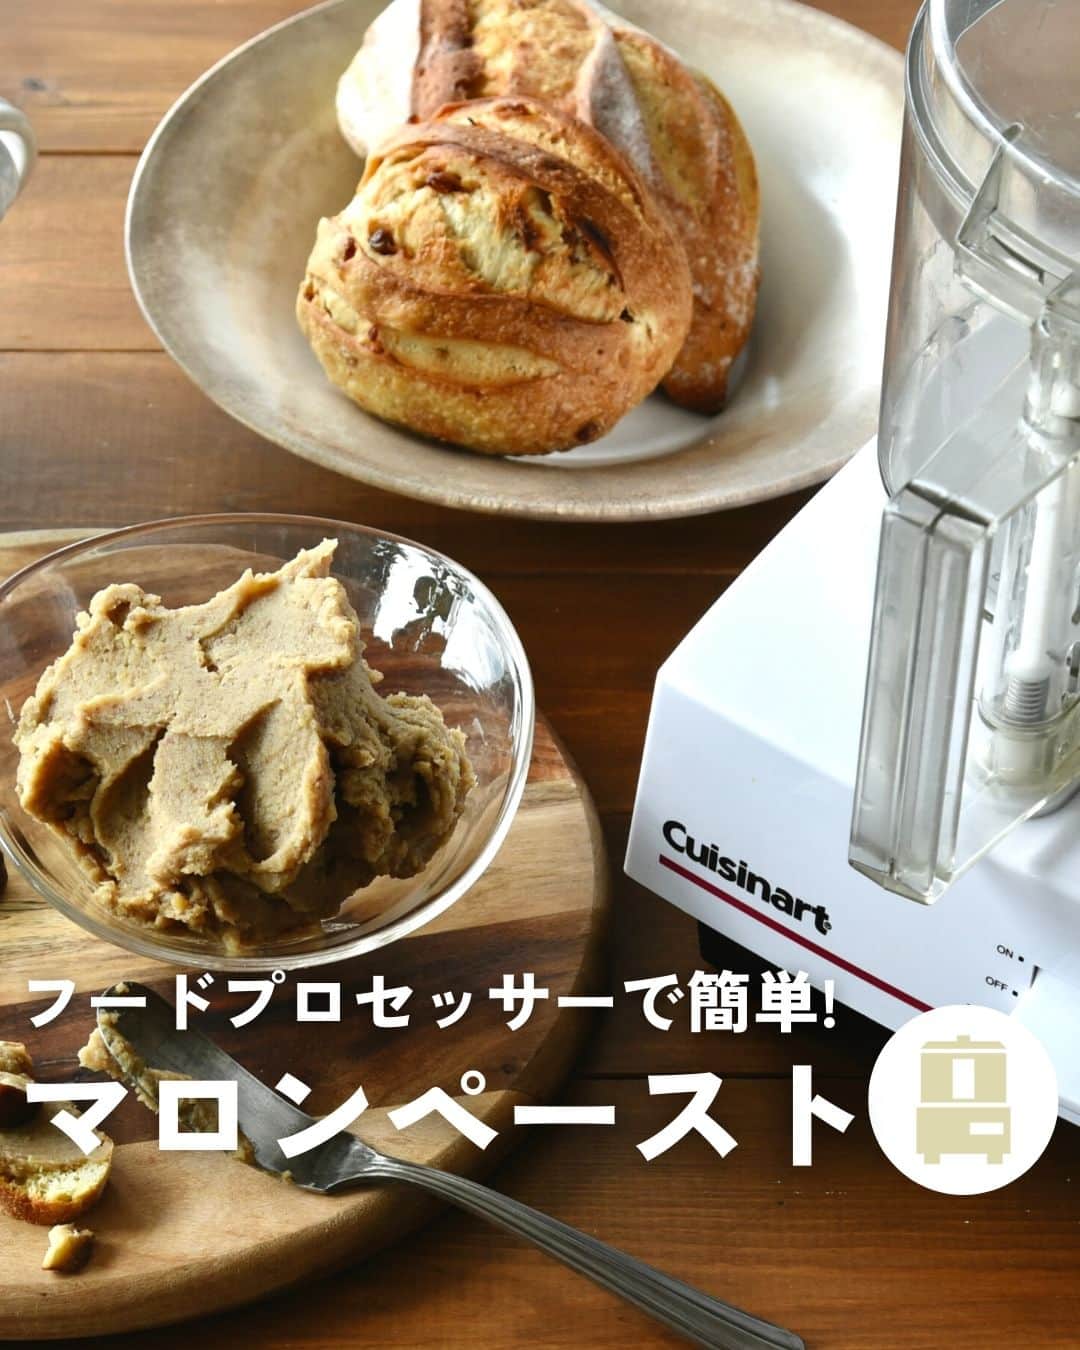 Cuisinart(クイジナート)ジャパン公式アカウントのインスタグラム：「🌰フードプロセッサーで簡単！ 甘栗を使って作る「マロンペースト」  朝のトーストにも、アイスに添えたり、 焼き菓子に混ぜたり。 さらに裏漉ししてなめらかにすればモンブランにも。  いろいろアレンジして旬の栗を堪能しましょう✨  クイジナートの「フードプロセッサーL」は 業務用で使用されているインダクションモーターを搭載。 パワフルに攪拌し、なめらかなペーストがあっという間に仕上がります。  生栗から作ると手間のかかるマロンクリームを 甘栗とフードプロセッサーで手軽に手作り♪  なめらかな口どけのマロンクリームができますよ😋  🌰マロンペースト 📝作りやすい分量  甘栗: 200g 生クリーム（牛乳でも可）: 100cc グラニュー糖: 40g 洋酒（お好みで）: 小さじ１  📝作り方 ① フードプロセッサーに甘栗、生クリーム、 グラニュー糖を入れて、なめらかになるまで撹拌する。  ②  小鍋に移して弱火にかけ、 ゴムベラで混ぜながら全体に火を通し、 お好みの濃度まで水分を飛ばす。  洋酒をお好みで少量加えて香りをつける。  ・。・。・。・。・。・⁣  📷Photo：  @reiko.t.table  ⁣Item：フードプロセッサーL⁣ 🔍DLC-192J⁣  ⁣・。・。・。・。・。・⁣  ーーーーー クイジナート公式HPでは、毎日の料理が楽しくなる様々な製品情報やレシピを公開中♪ 詳しくはプロフィールのリンクから！ ▶️@cuisine_art ーーーーー  #クイジナート #cuisinart #クイジナートのある生活 #クイジナートLOVE #丁寧な暮らし #暮らしを楽しむ #フードプロセッサー #フープロ #フープロのある生活 #みじん切り #おうちスイーツ #時短家電 #時短調理 #便利家電 #キッチングッズ #キッチン家電 #旬の食材 #保存食 #マロンペースト #マロンクリーム #マロンケーキ #マロンスイーツ #栗ペースト #栗レシピ #栗スイーツ #パンのある暮らし #手作りお菓子 #手作りお菓子記録 #マロン #🌰」